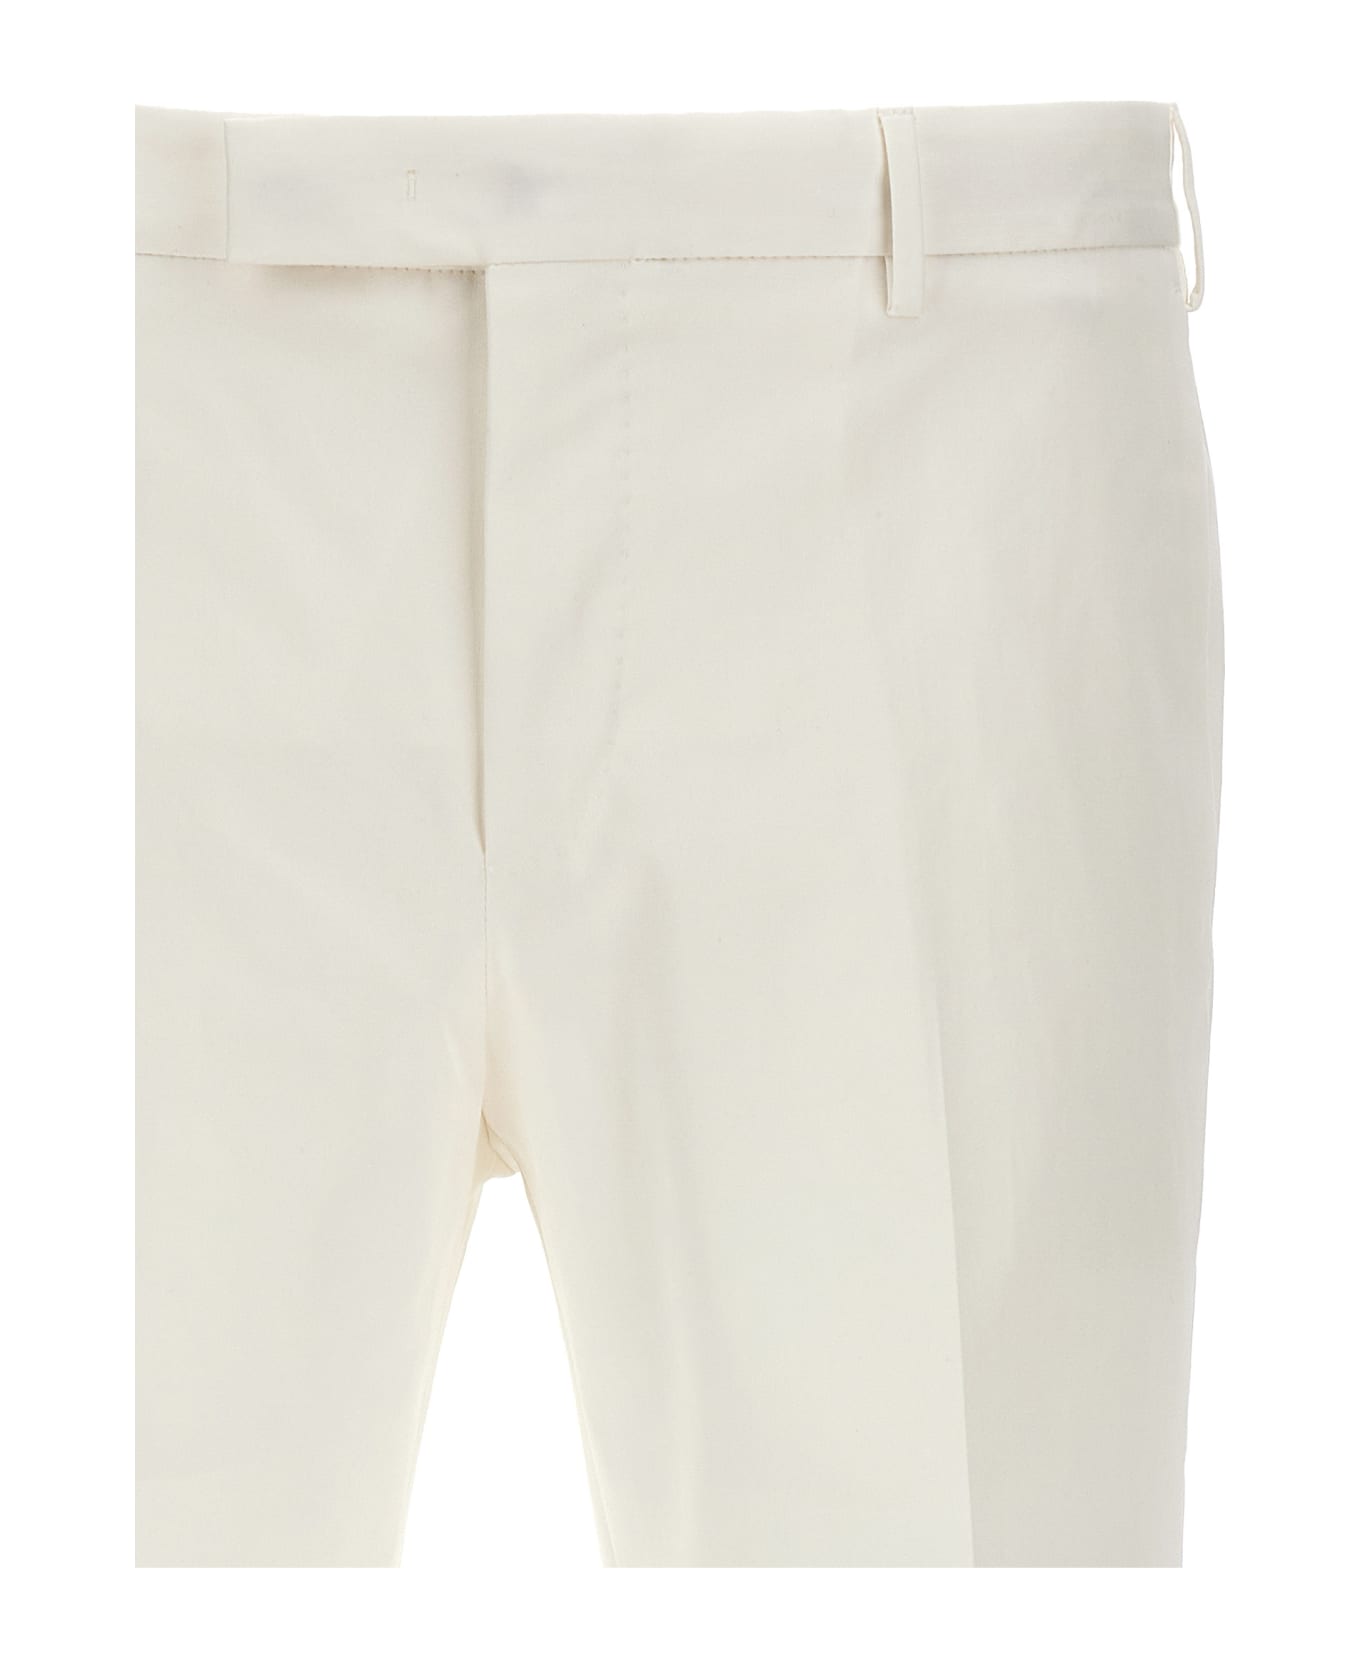 PT Torino 'dieci' Pants - White